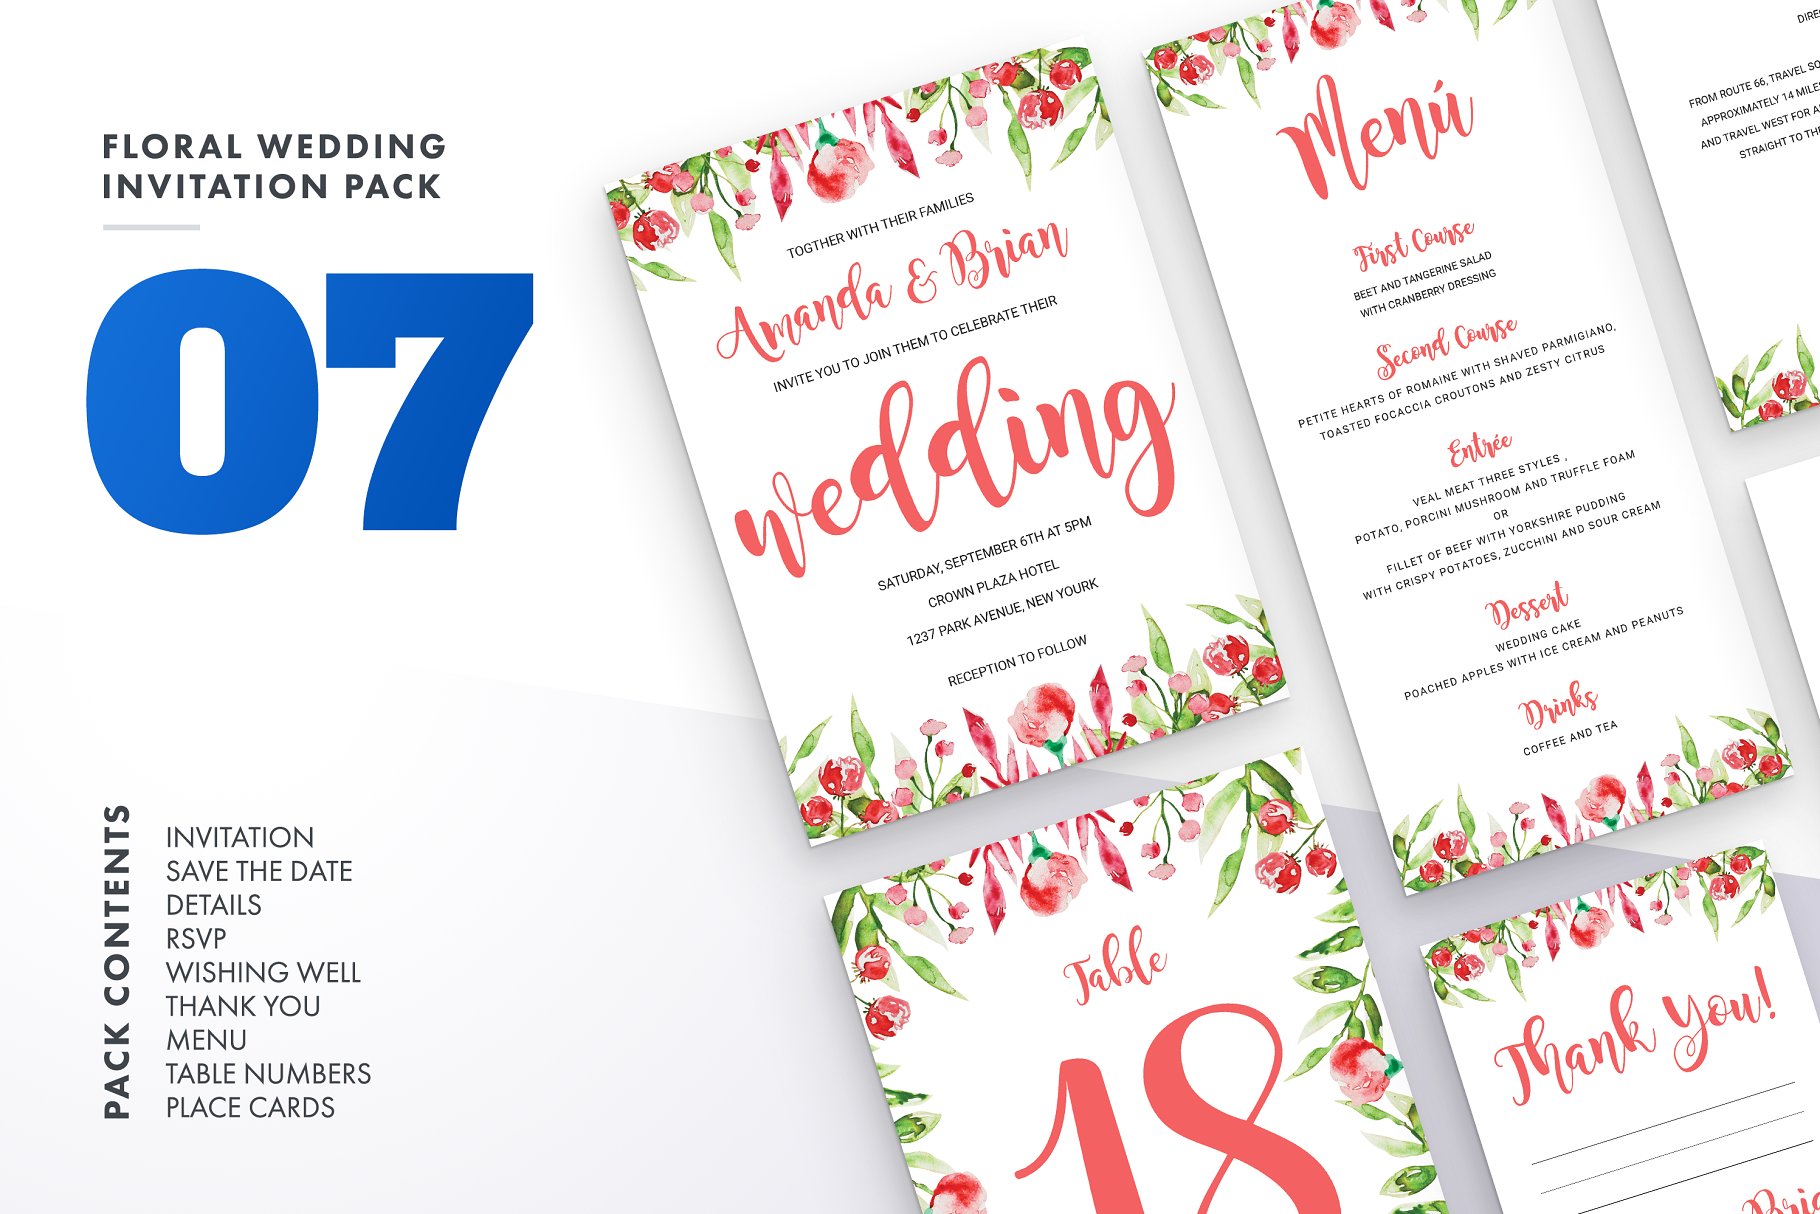 花卉配饰婚礼邀请物料设计模板合集 Floral Wedding Invitation Set Vol.7插图